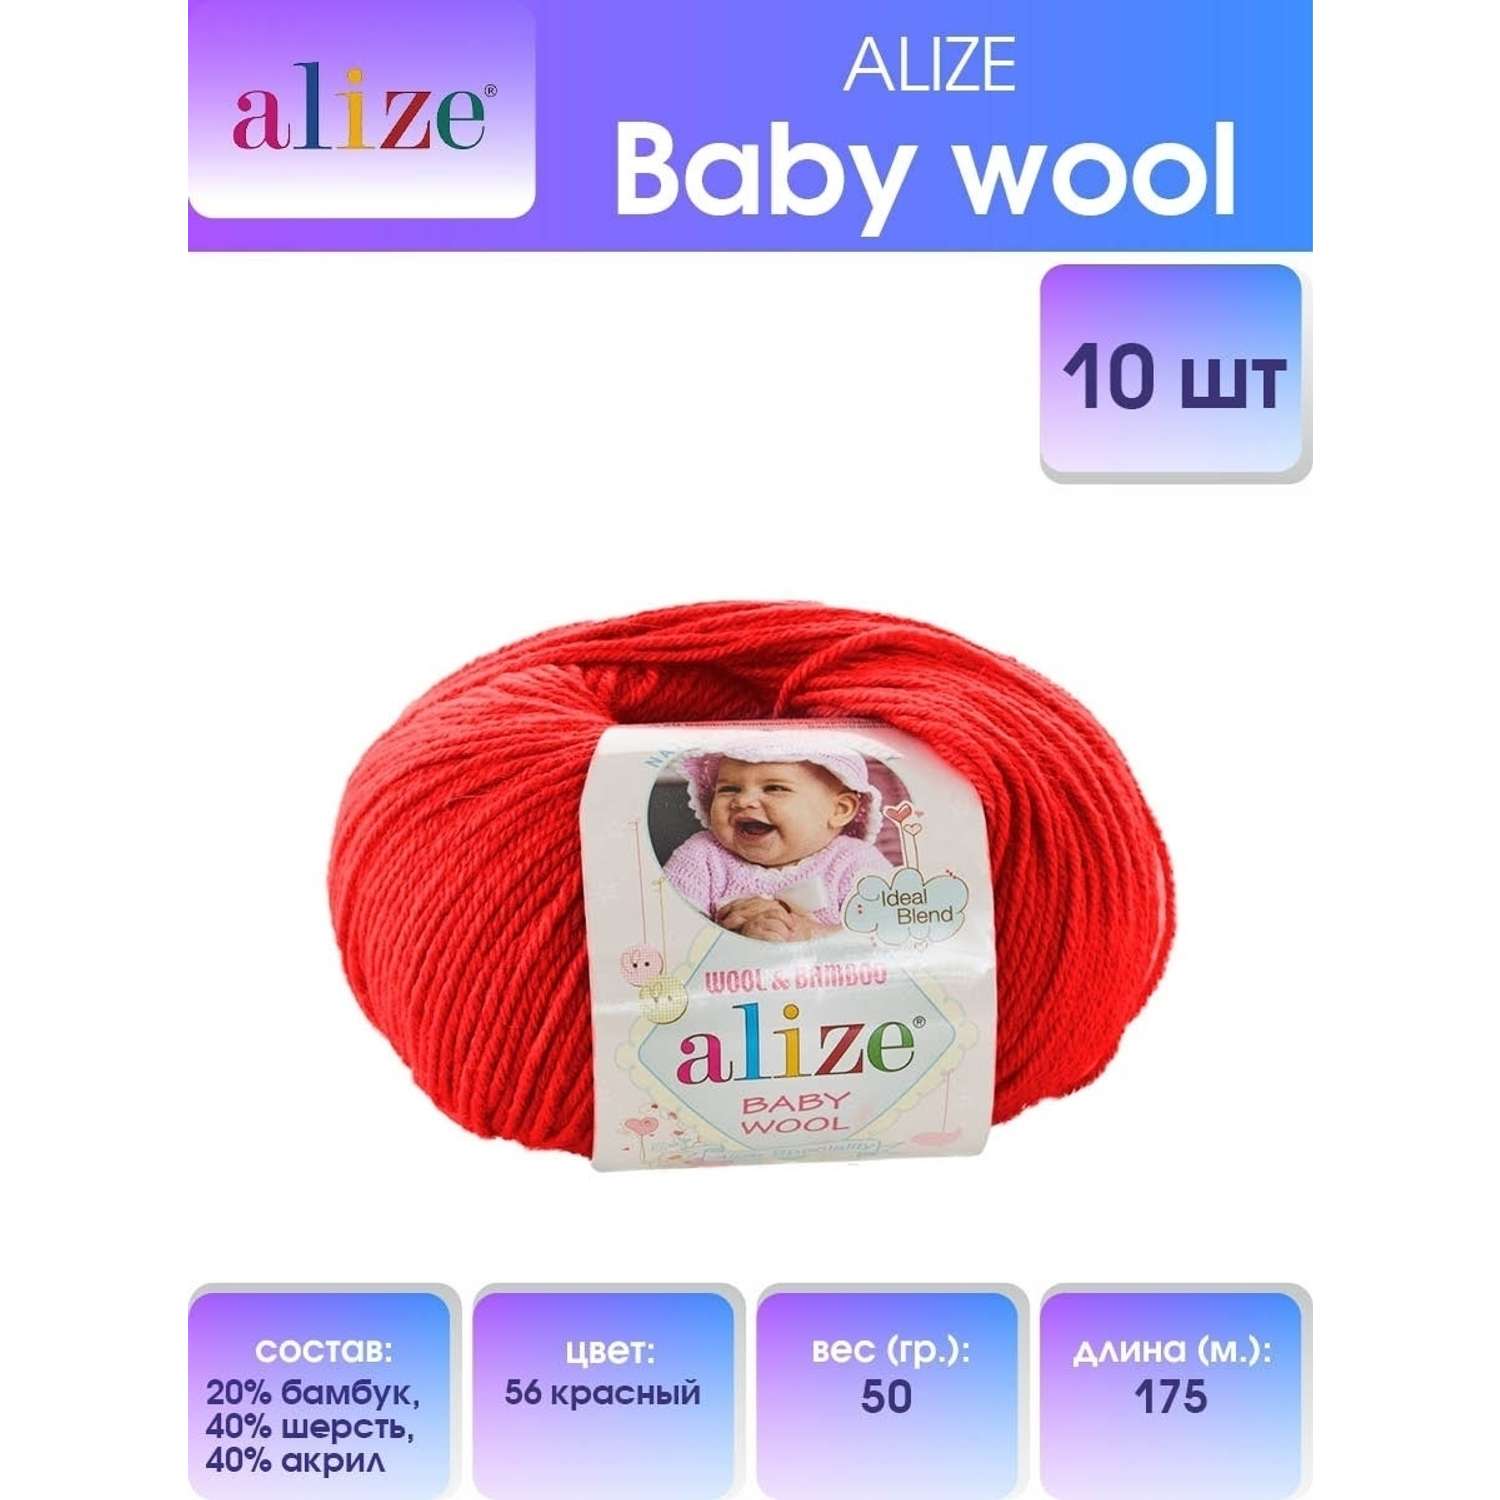 Пряжа для вязания Alize baby wool бамбук шерсть акрил мягкая 50 гр 175 м 56 красный 10 мотков - фото 1